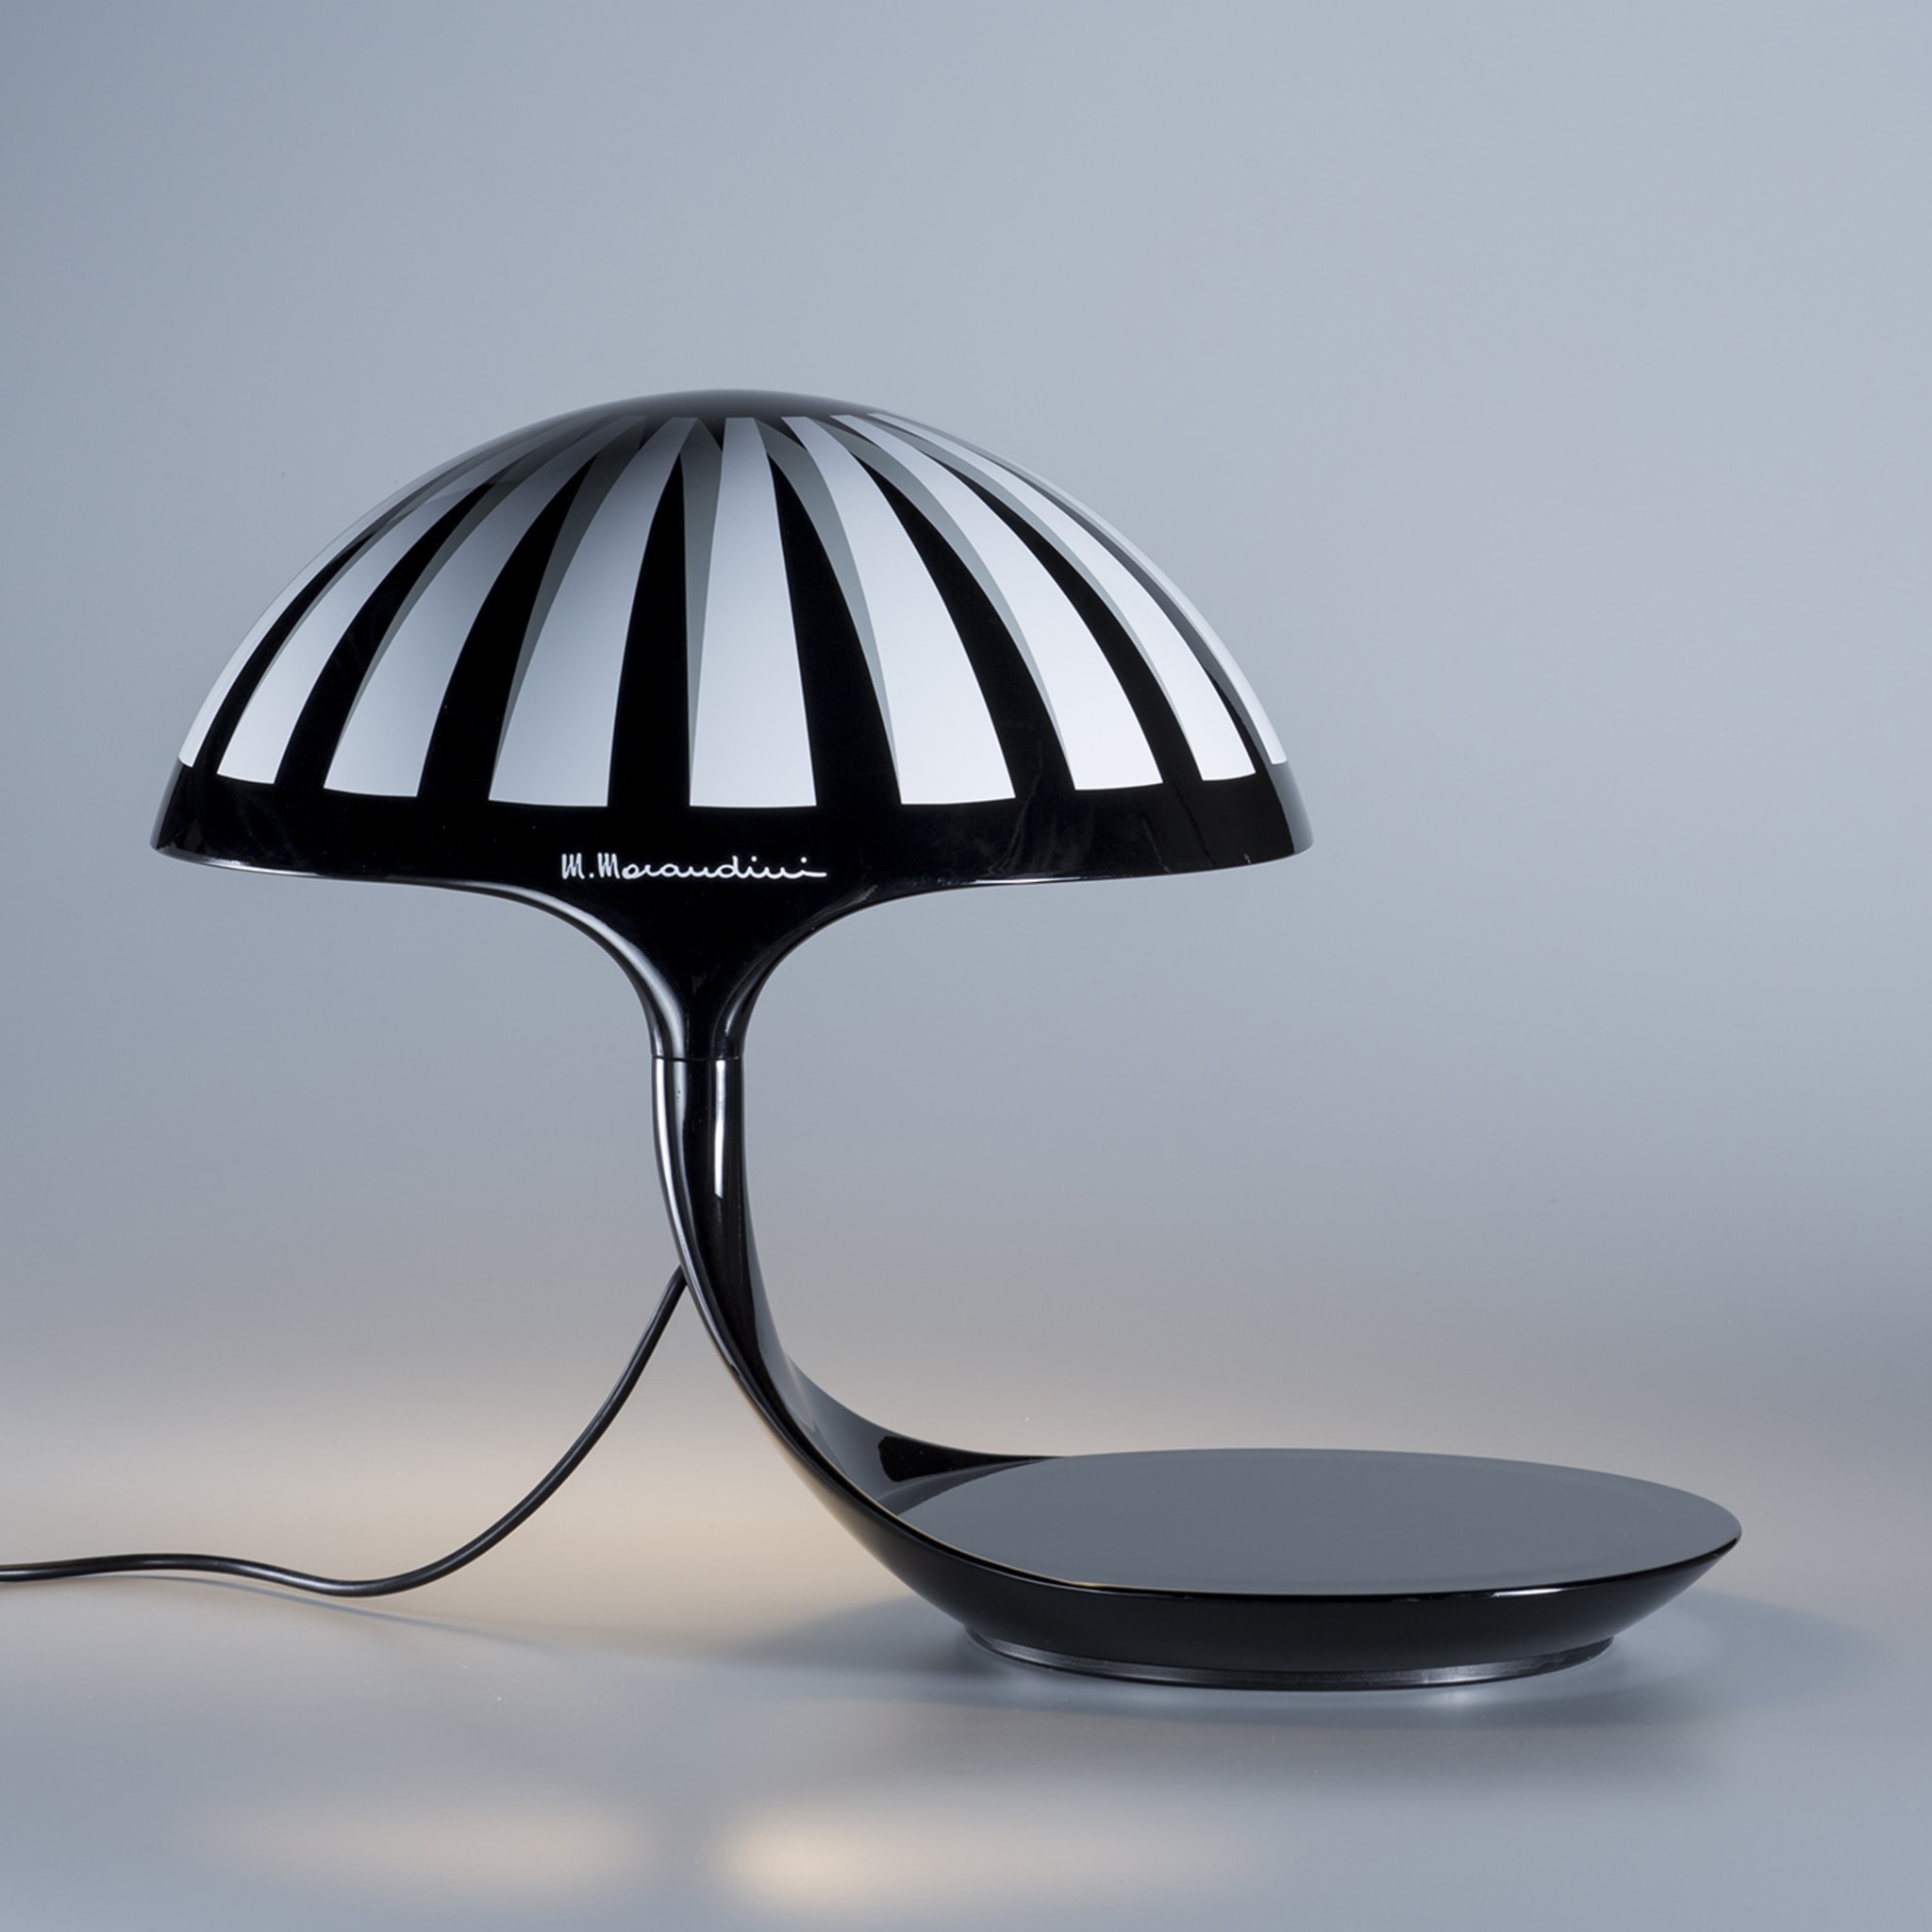 Cobra Texture Black-And-White Table Lamp by Marcello Morandini - Alternative view 1